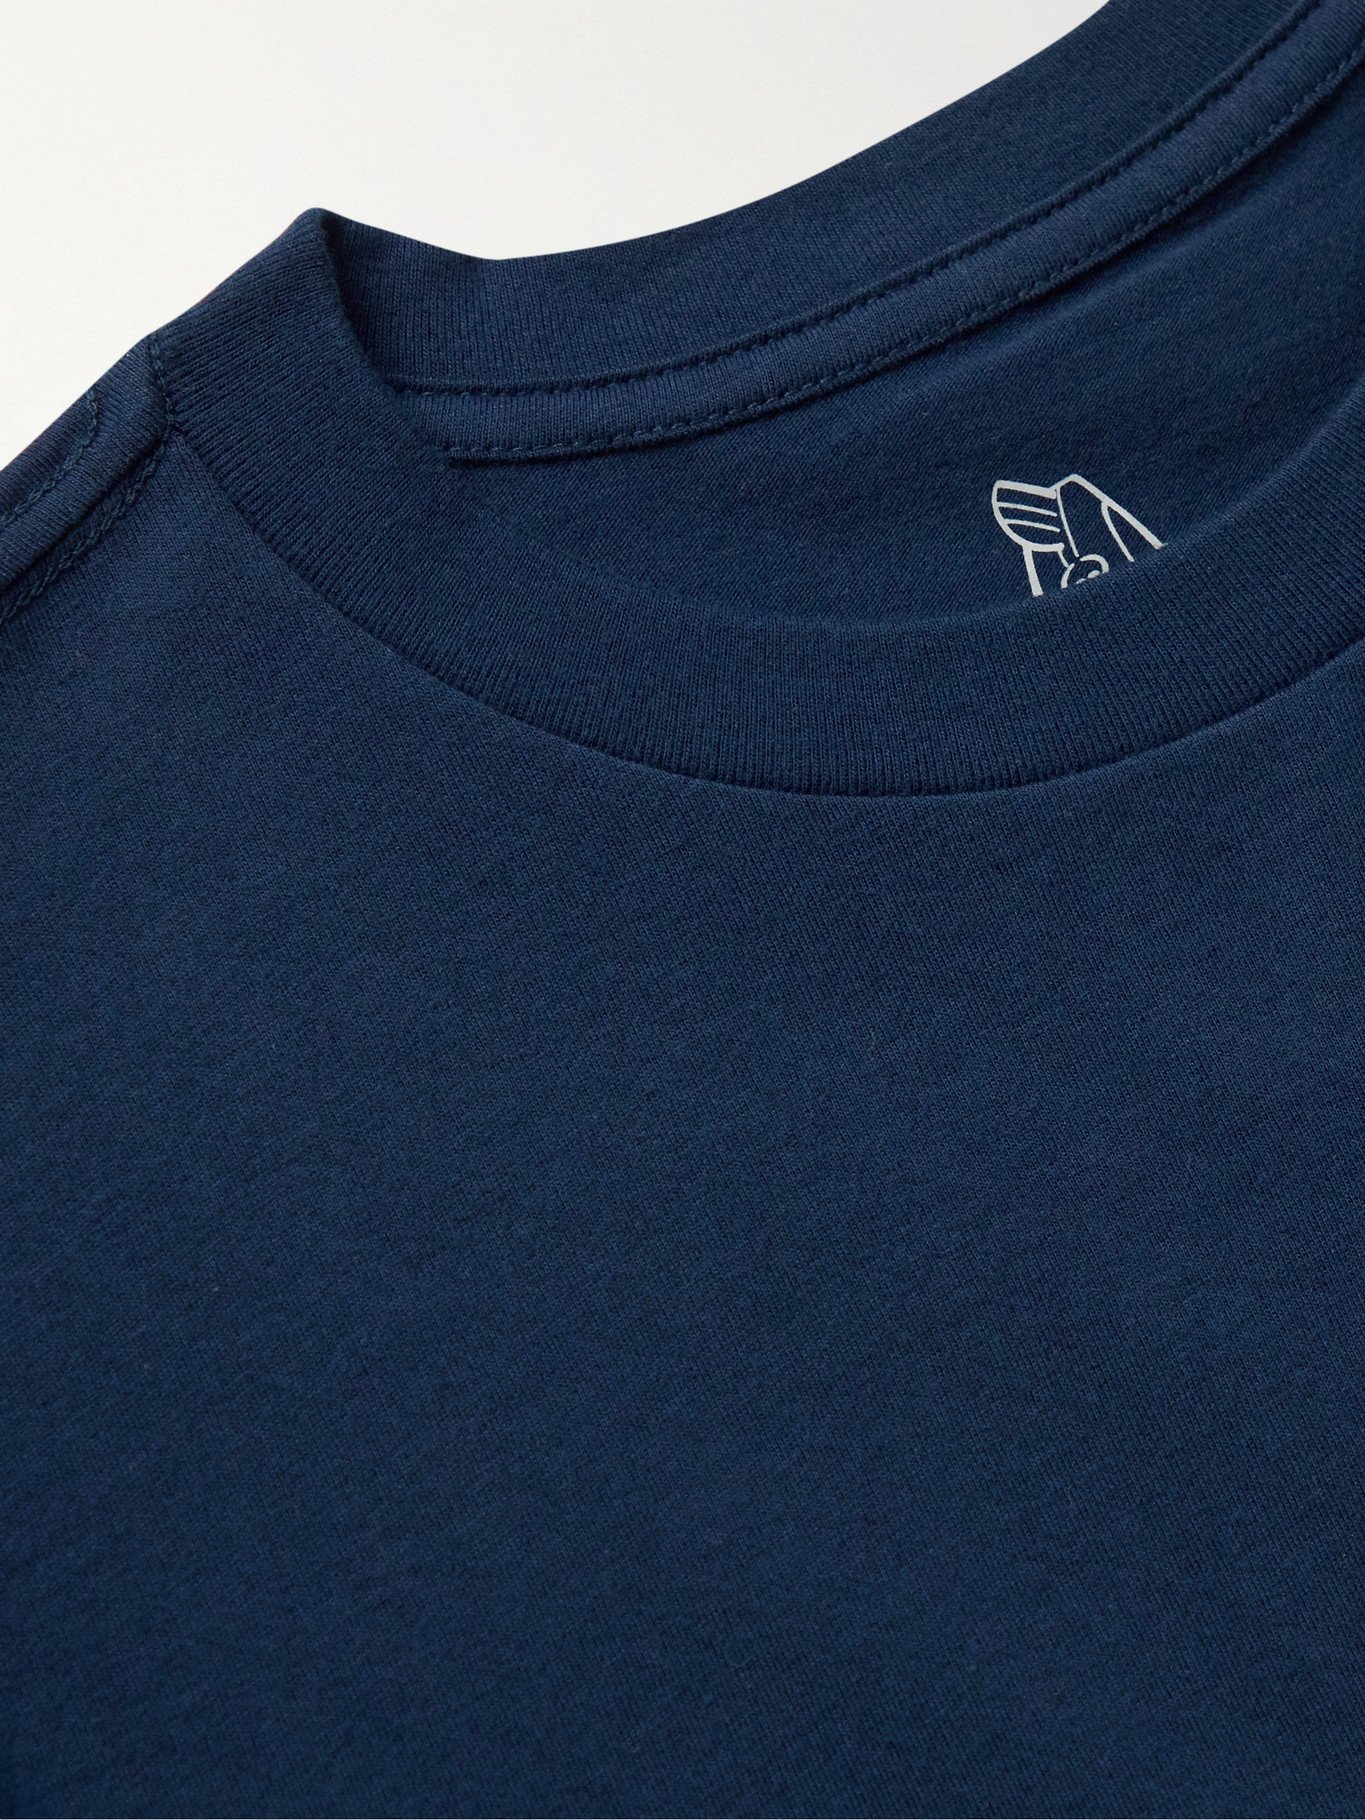 BIRDWELL - Logo-Print Cotton-Jersey T-Shirt - Blue Birdwell